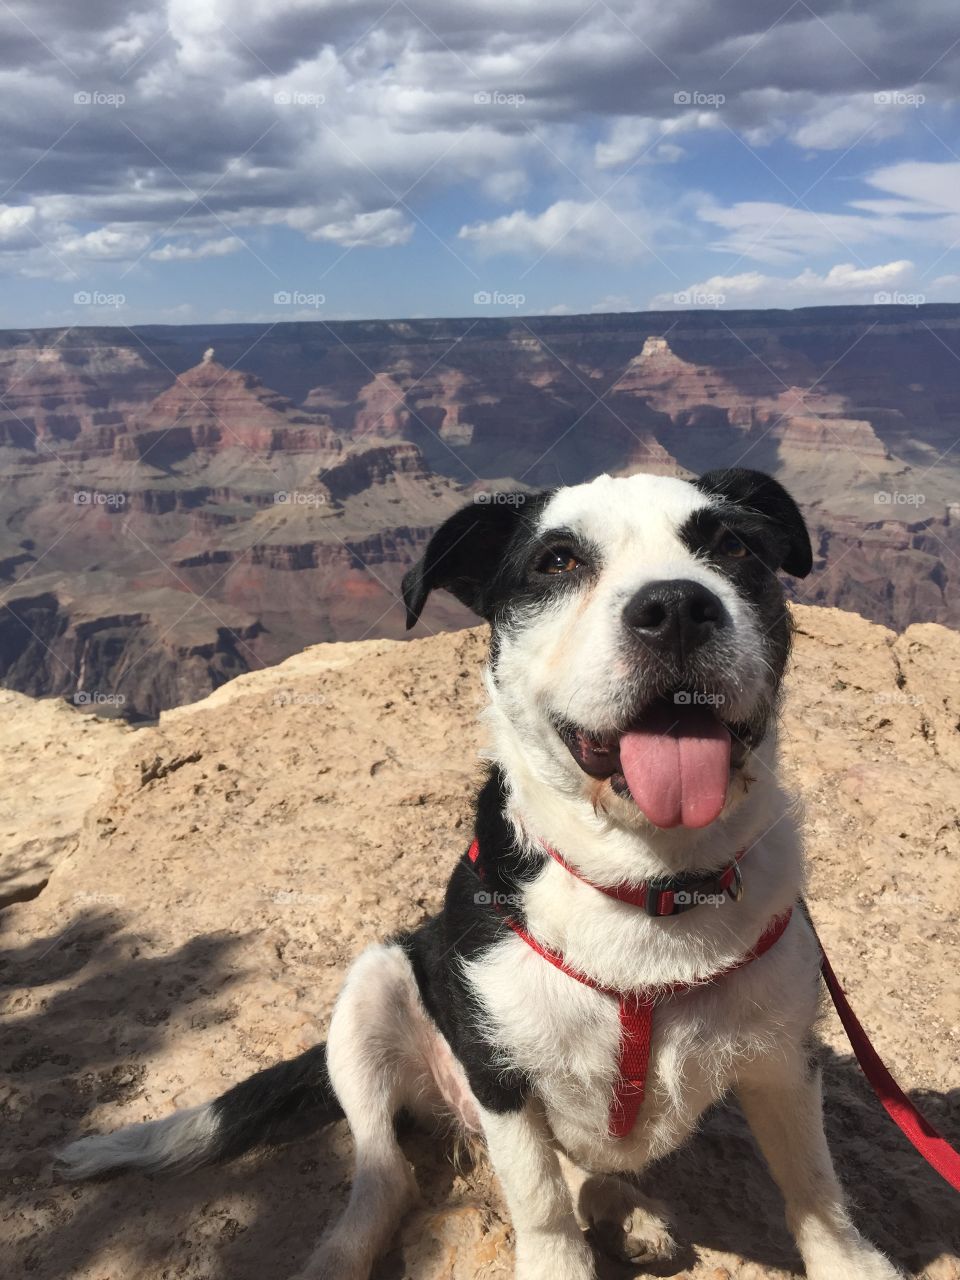 Rebel enjoying the Grand Canyon.